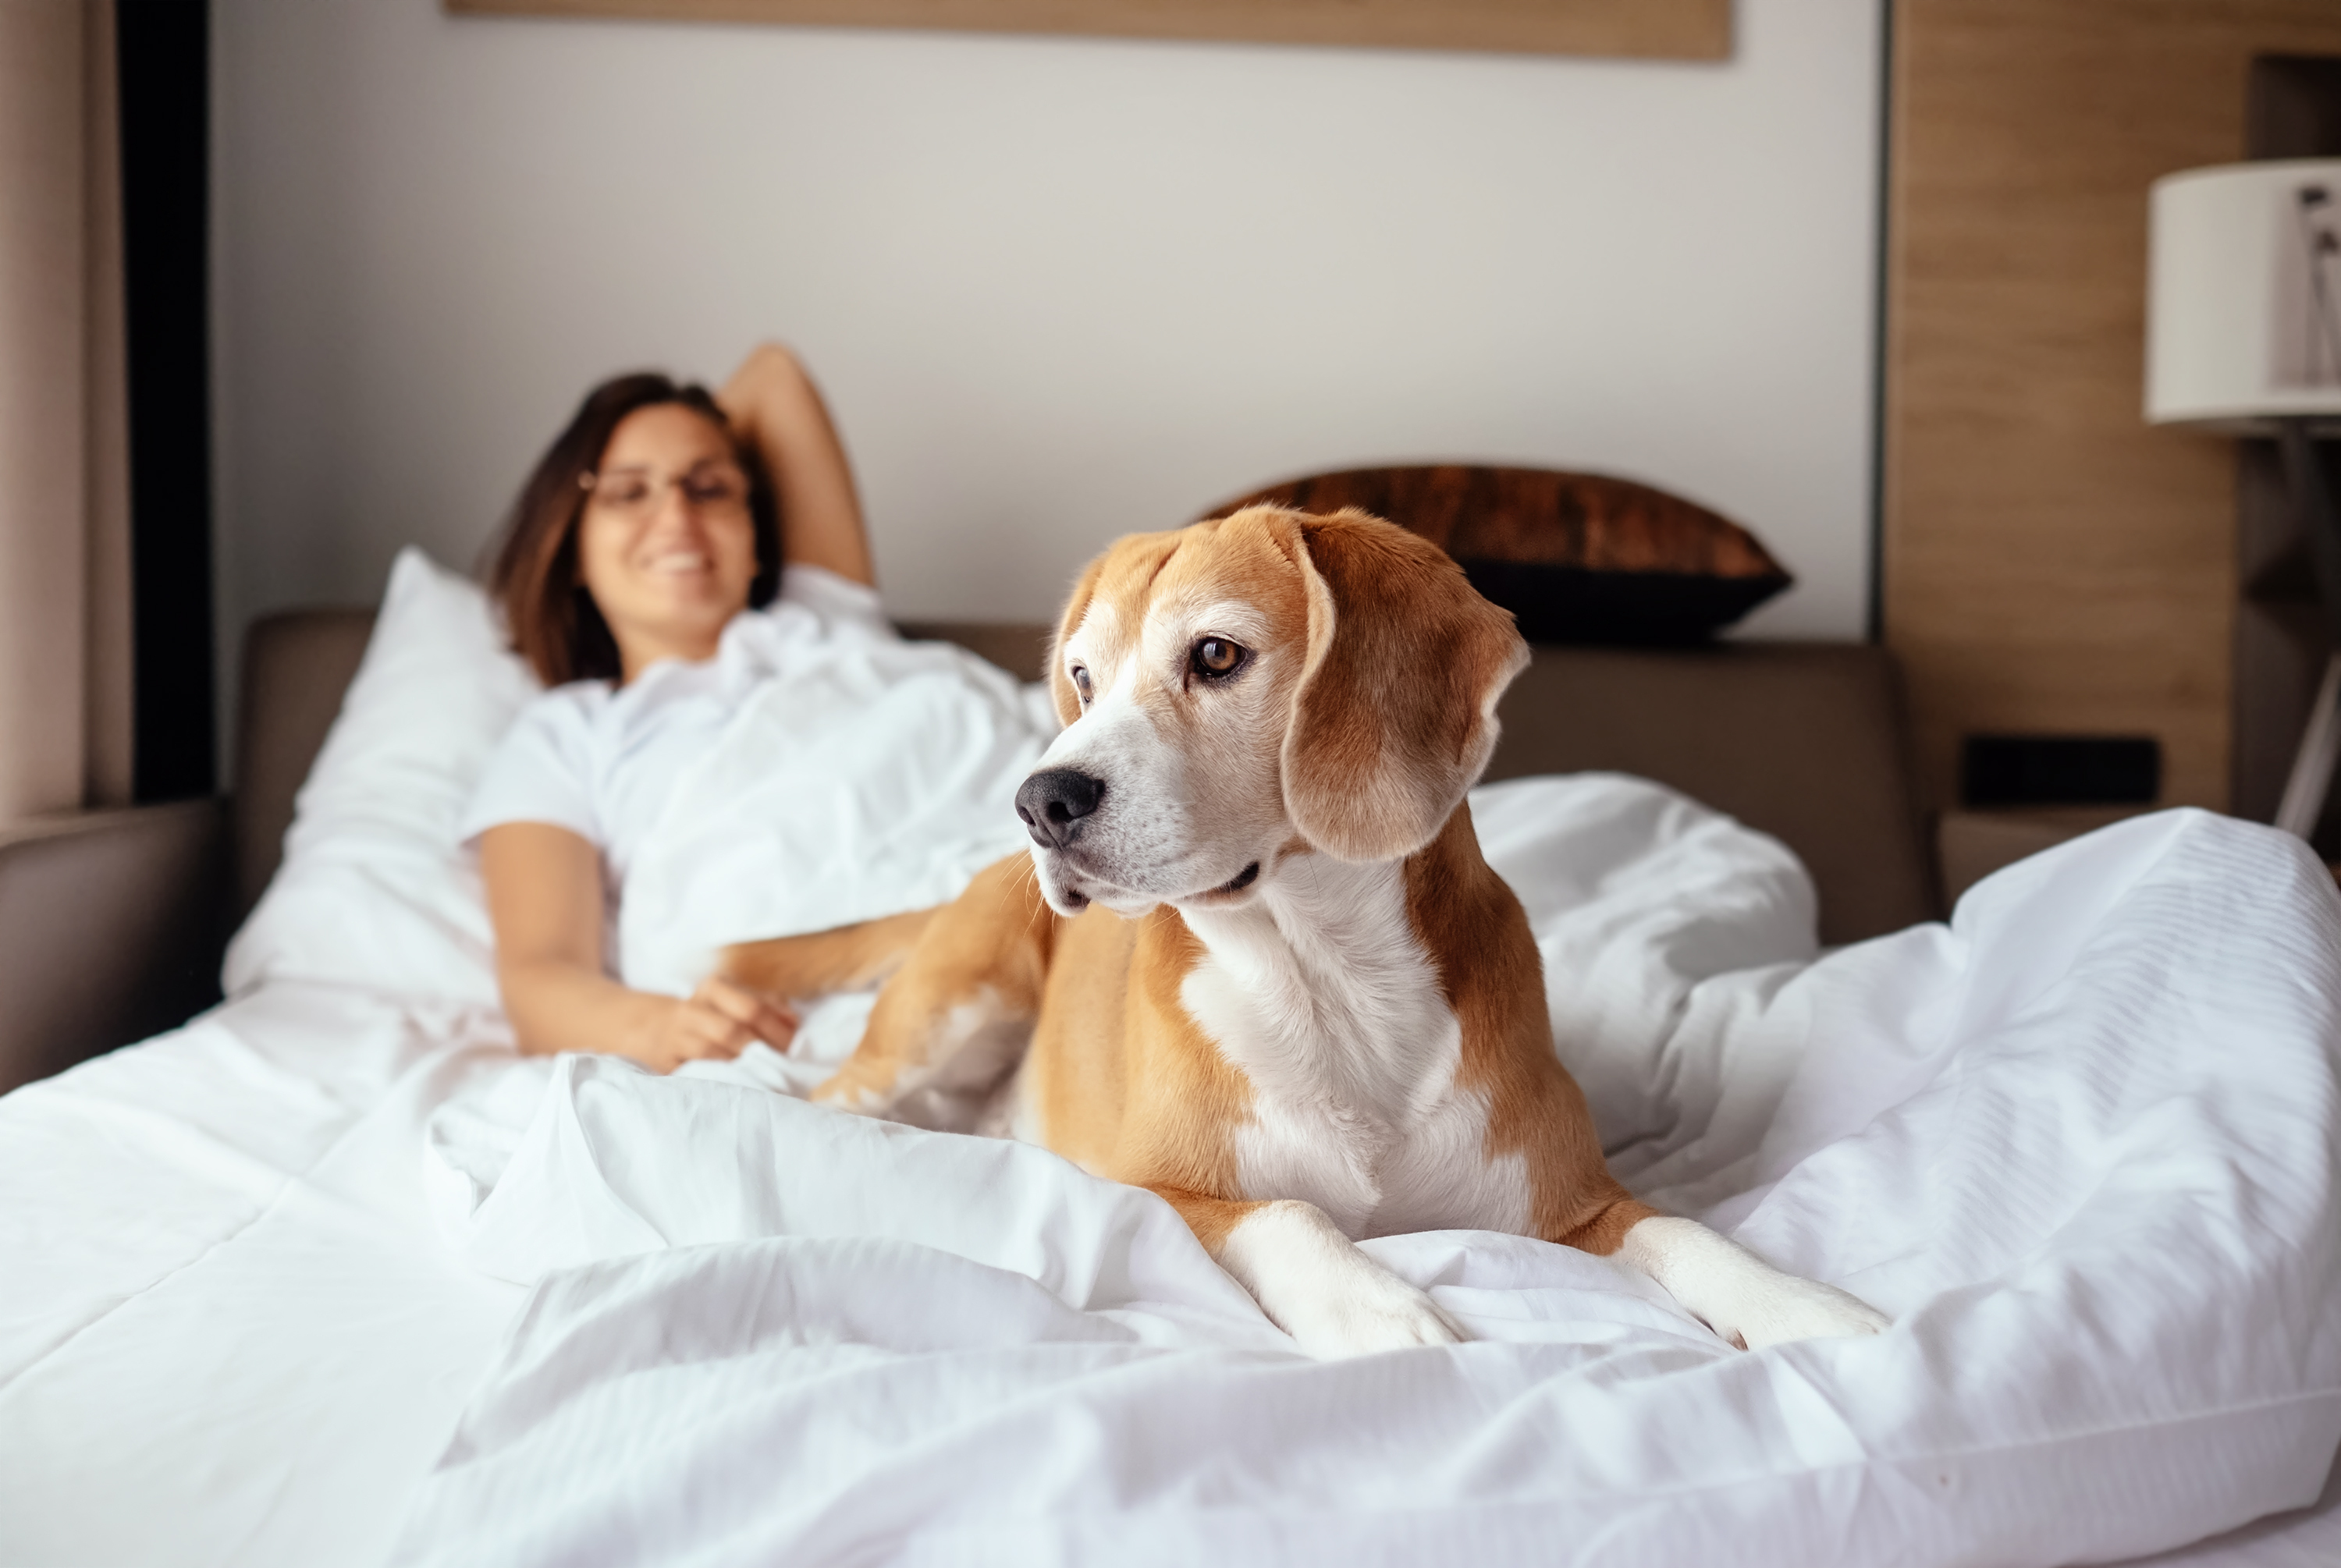 Hotéis pet friendly: o lugar ideal para se hospedar com o seu animal de estimação